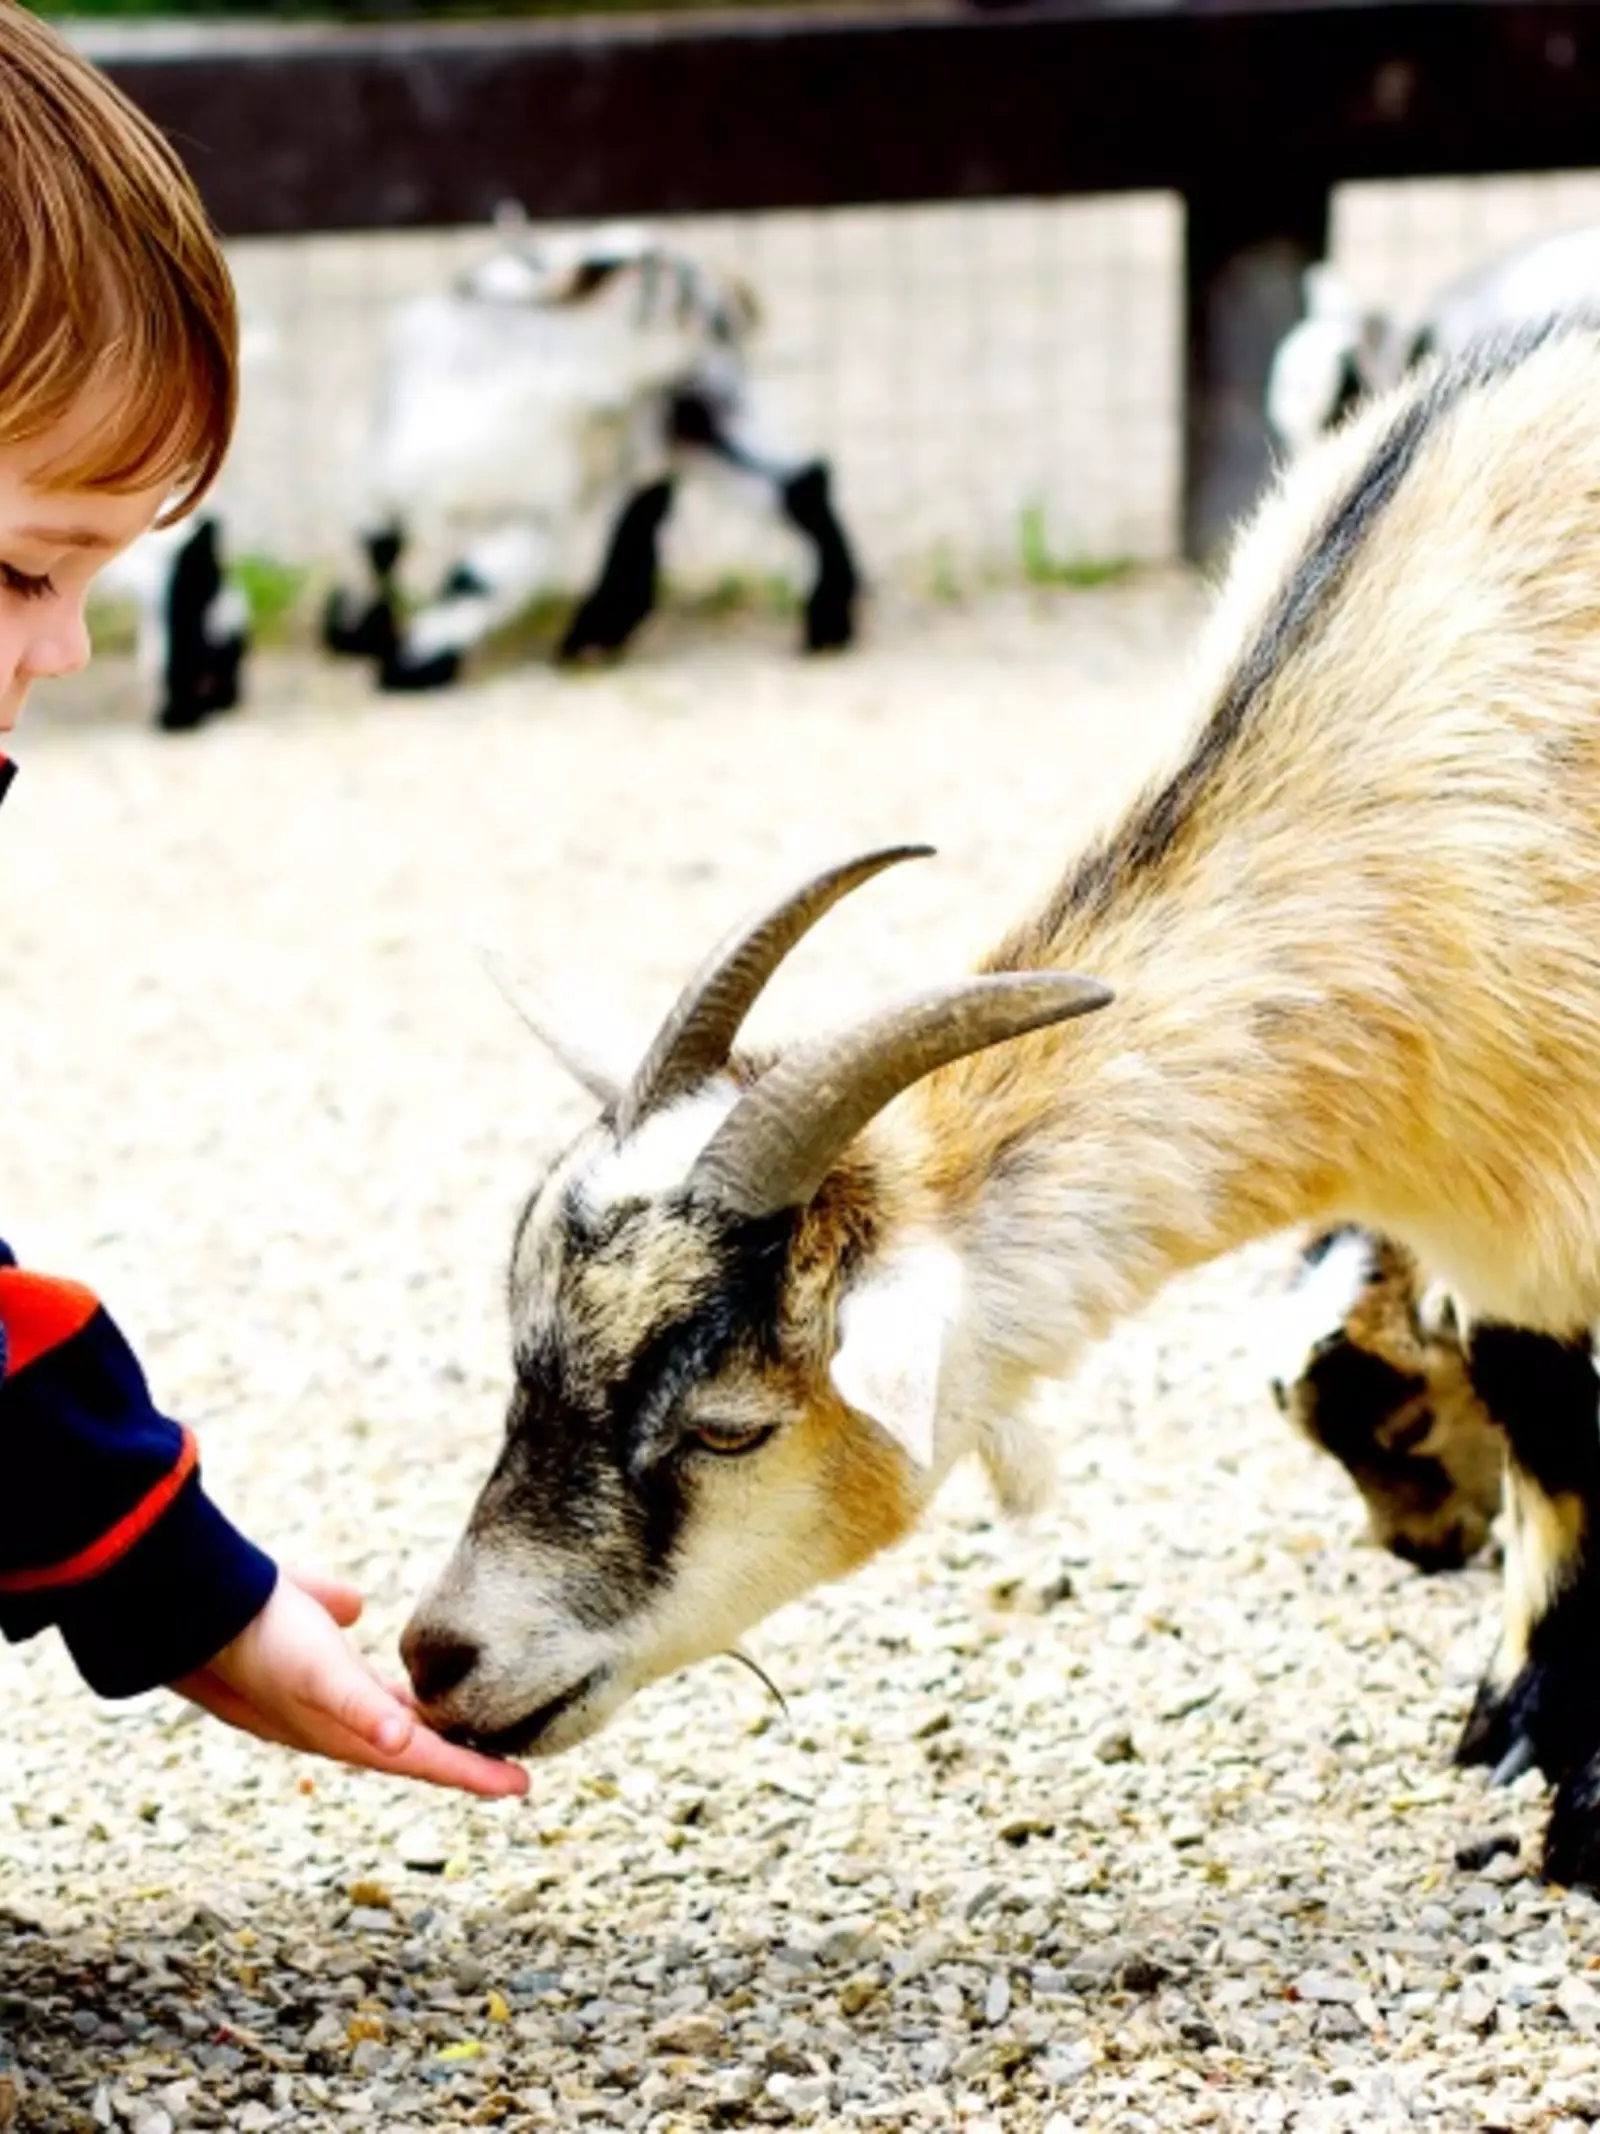 Little boy in striped shirt feeding a pygmy goat